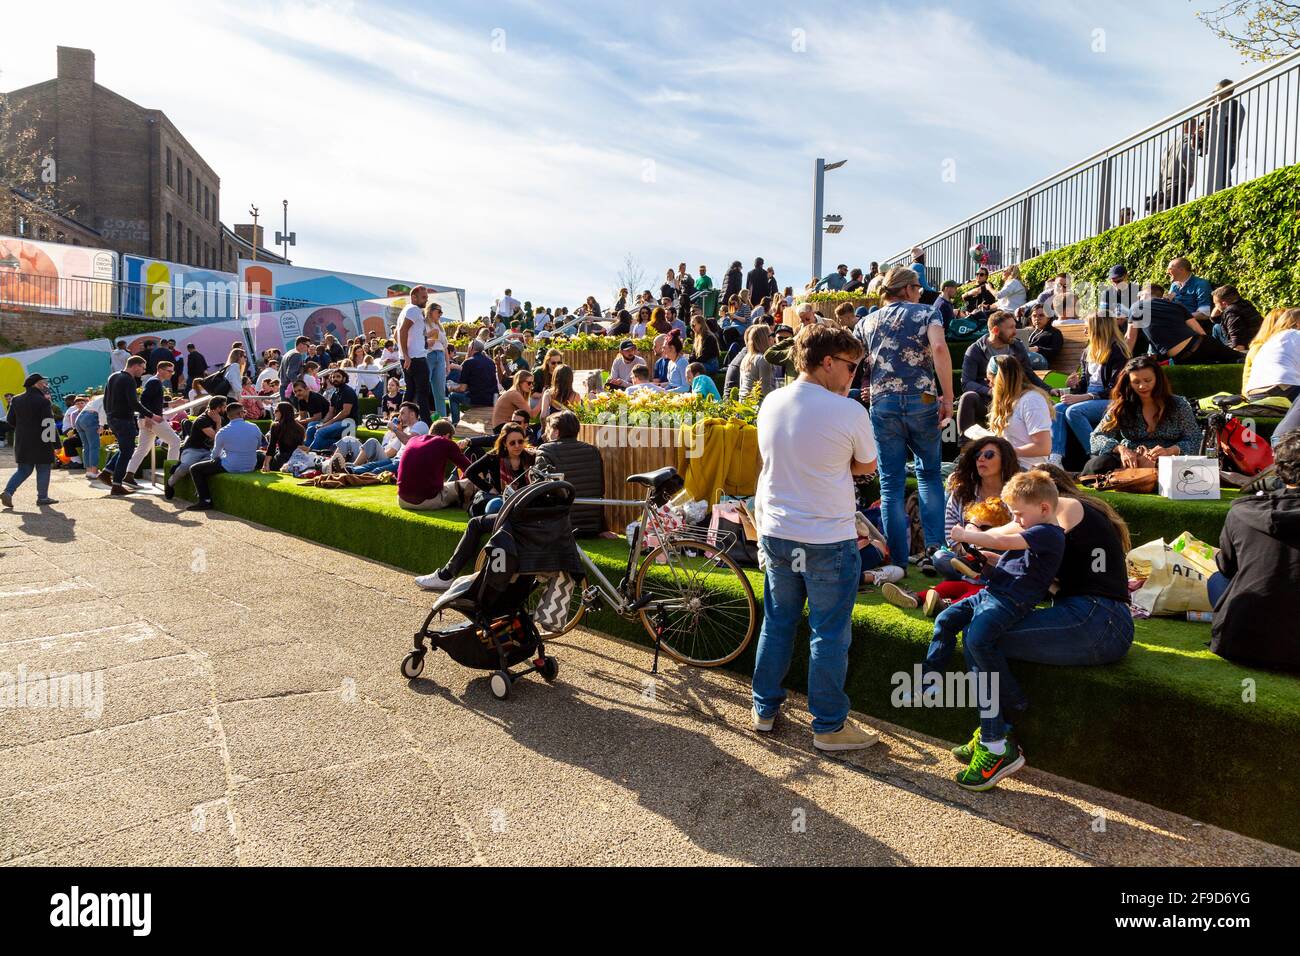 17. April 2021 - London, Großbritannien, Menschen sitzen an einem sonnigen Wochenende am Regents Canal am Granary Square, Kings Cross, nachdem die Sperrung der Coronavirus-Pandemie gelockert wurde Stockfoto